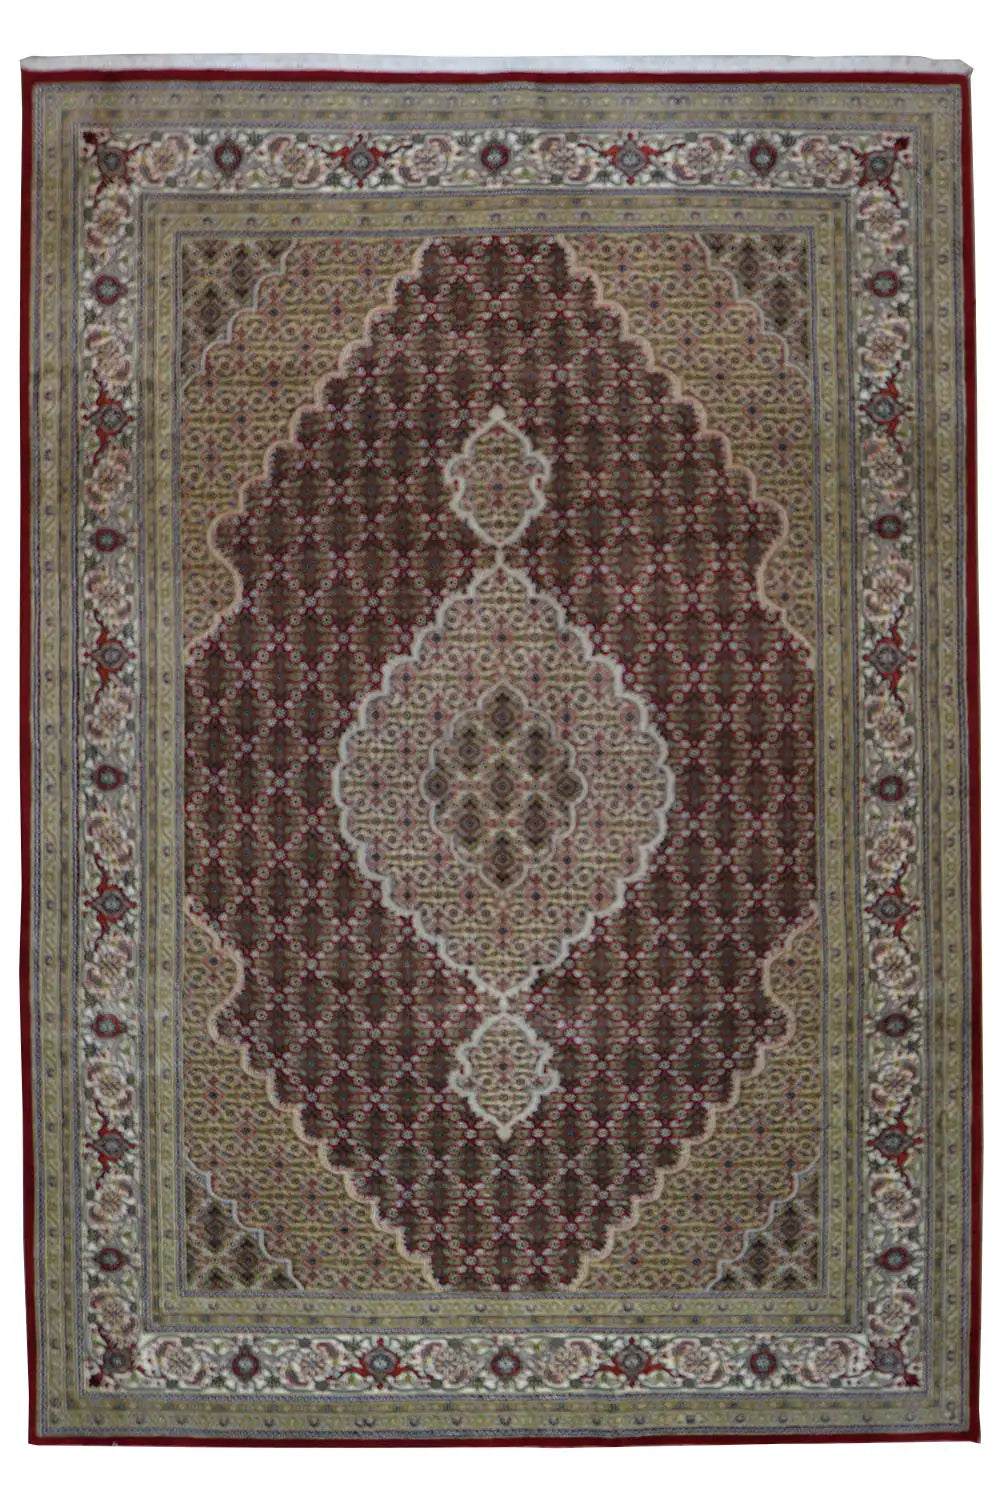 Mahi - 719393 (275x186cm) - German Carpet Shop